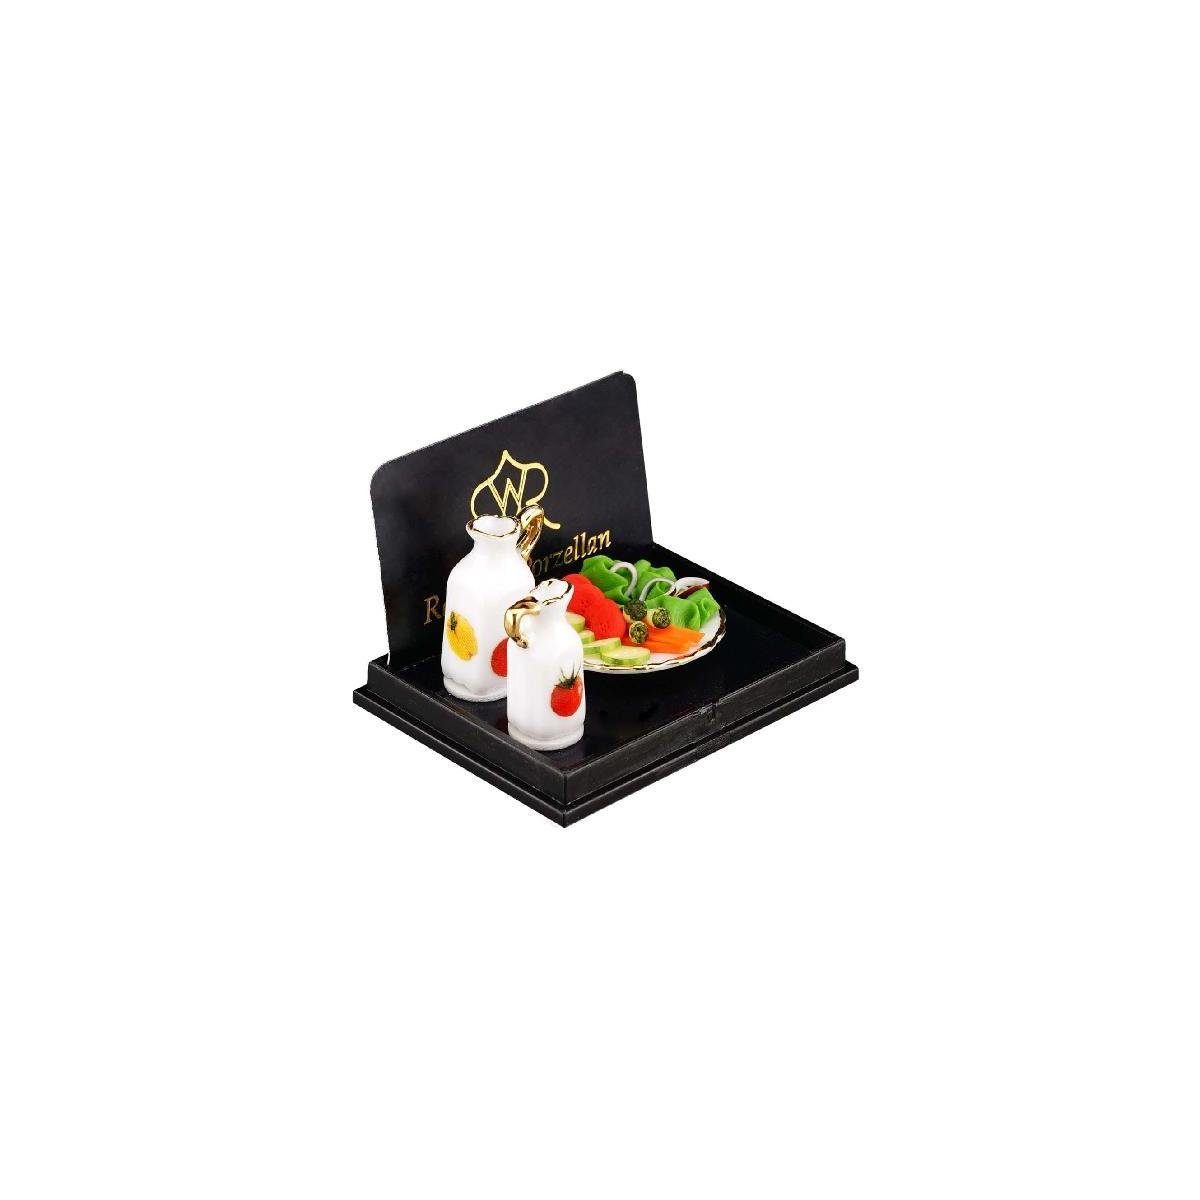 Reutter Porzellan Dekofigur 001.816/5 - Salatteller, Miniatur